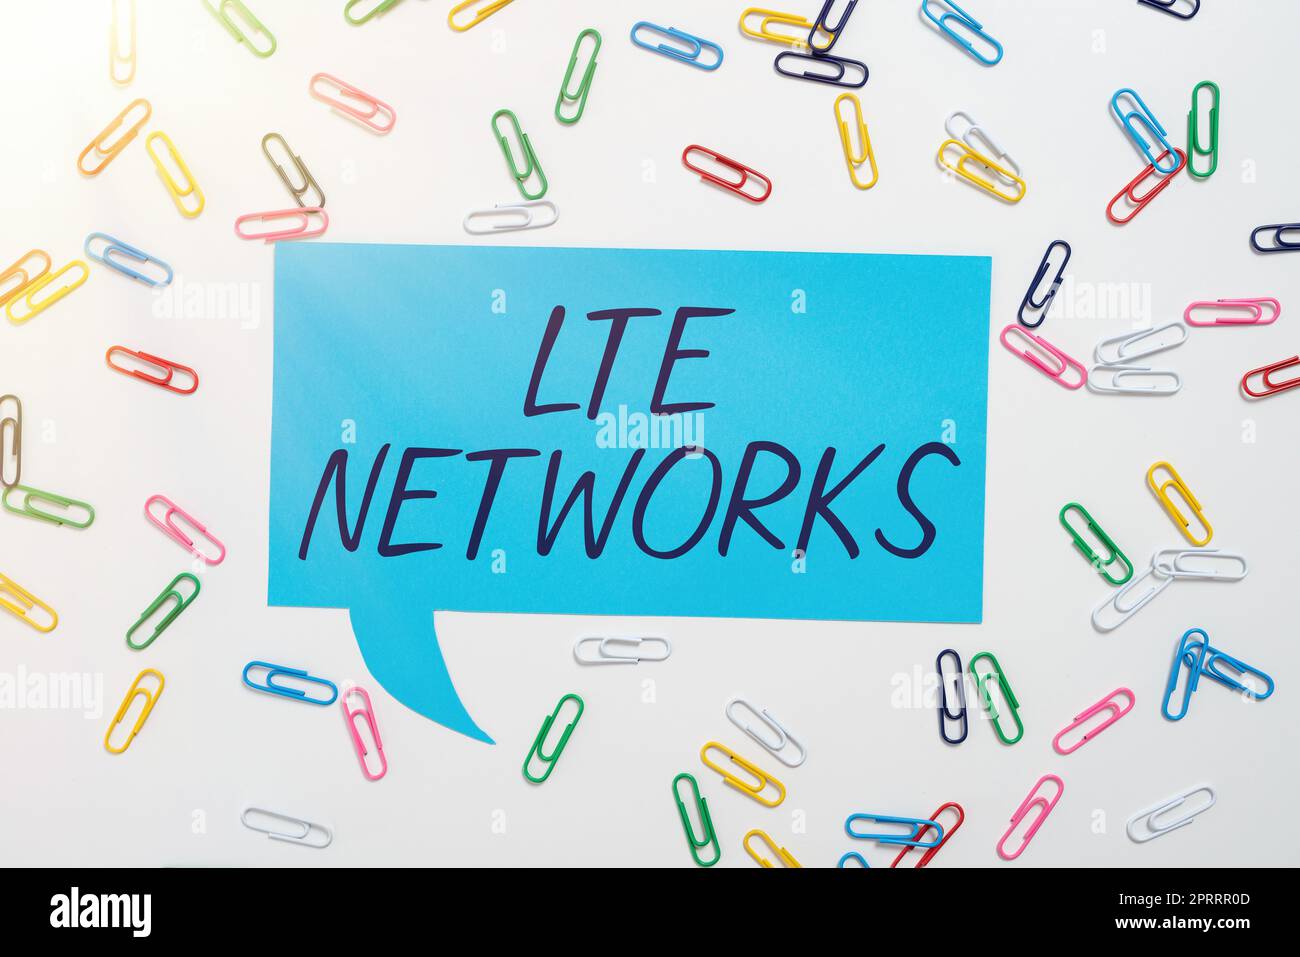 Affichage conceptuel réseaux LTE. Concept : connexion réseau la plus rapide disponible pour les communications sans fil Banque D'Images